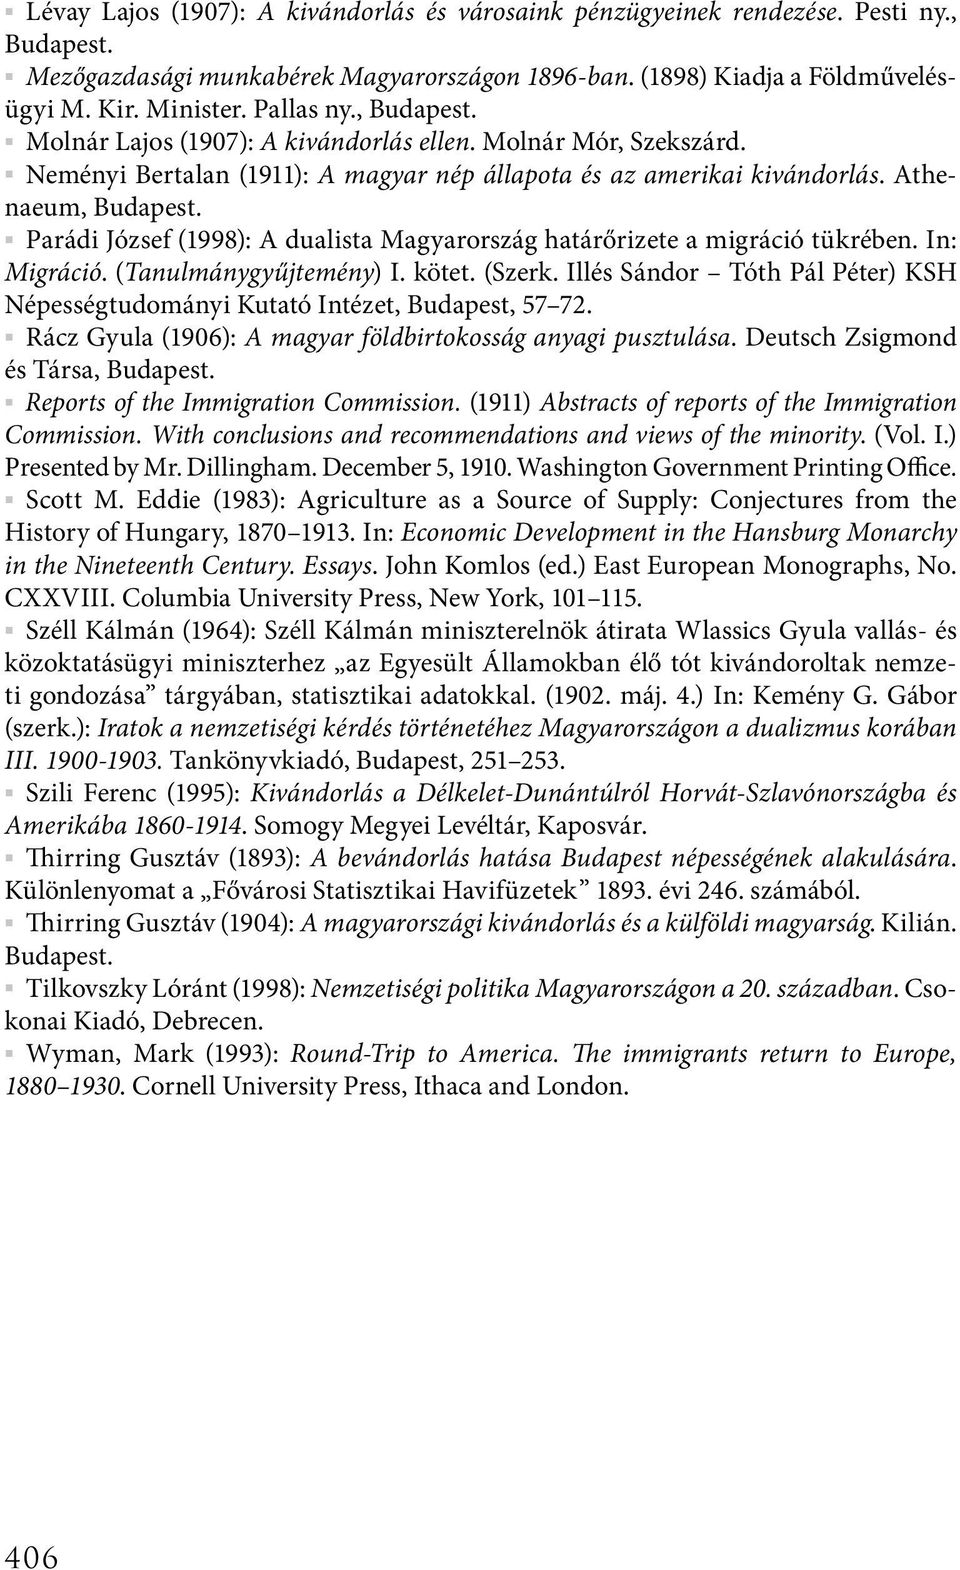 Parádi József (1998): A dualista Magyarország határőrizete a migráció tükrében. In: Migráció. (Tanulmánygyűjtemény) I. kötet. (Szerk.